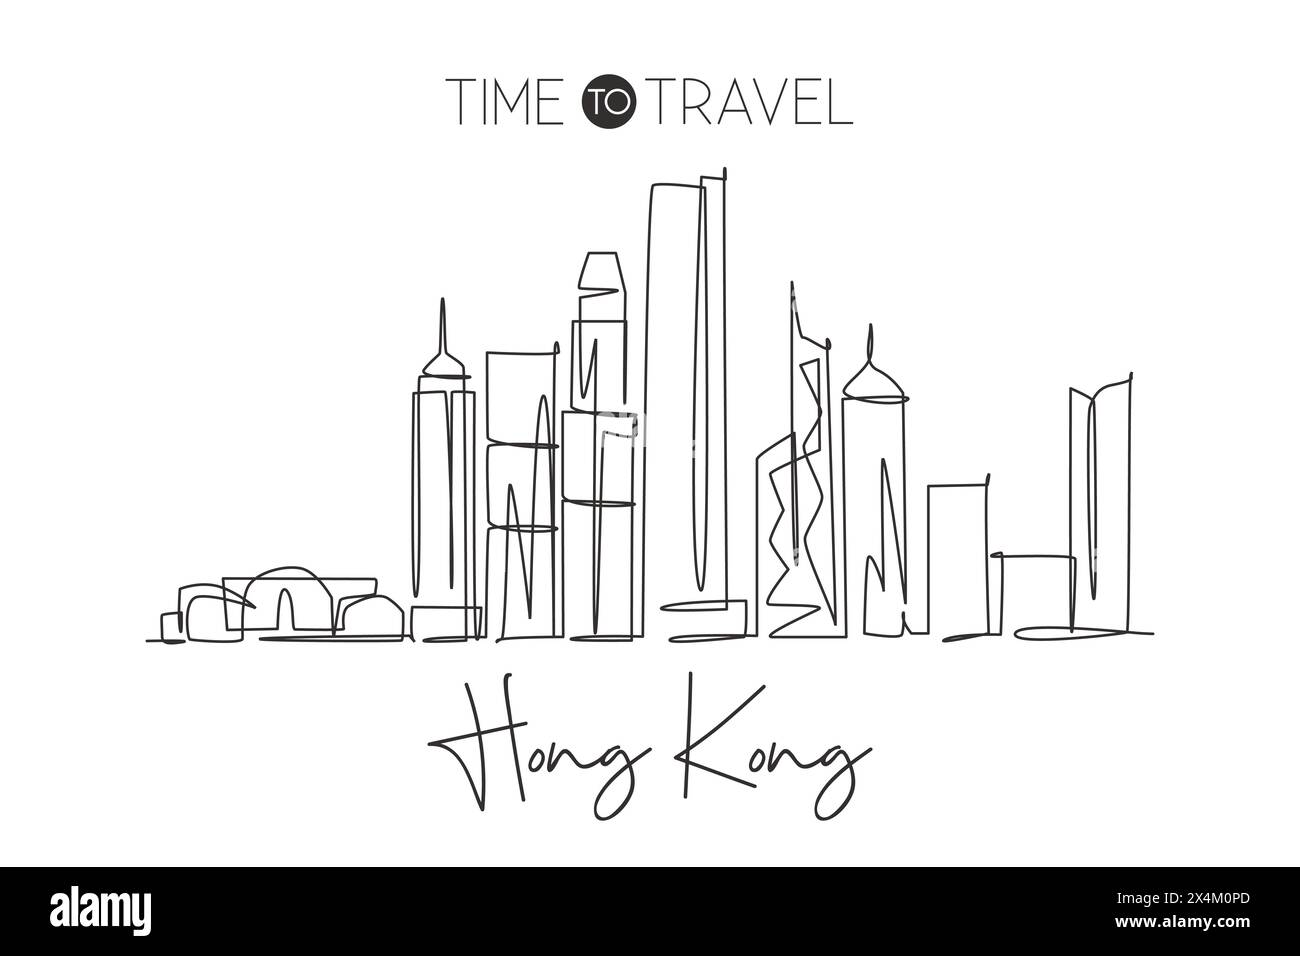 Eine durchgehende Linienzeichnung der Skyline der Stadt Hongkong, China. Wunderschönes Wahrzeichen mit Wanddekor und Postermotiv. Weltlandschaftstourismus Reiseurlaub. Stall Stock Vektor